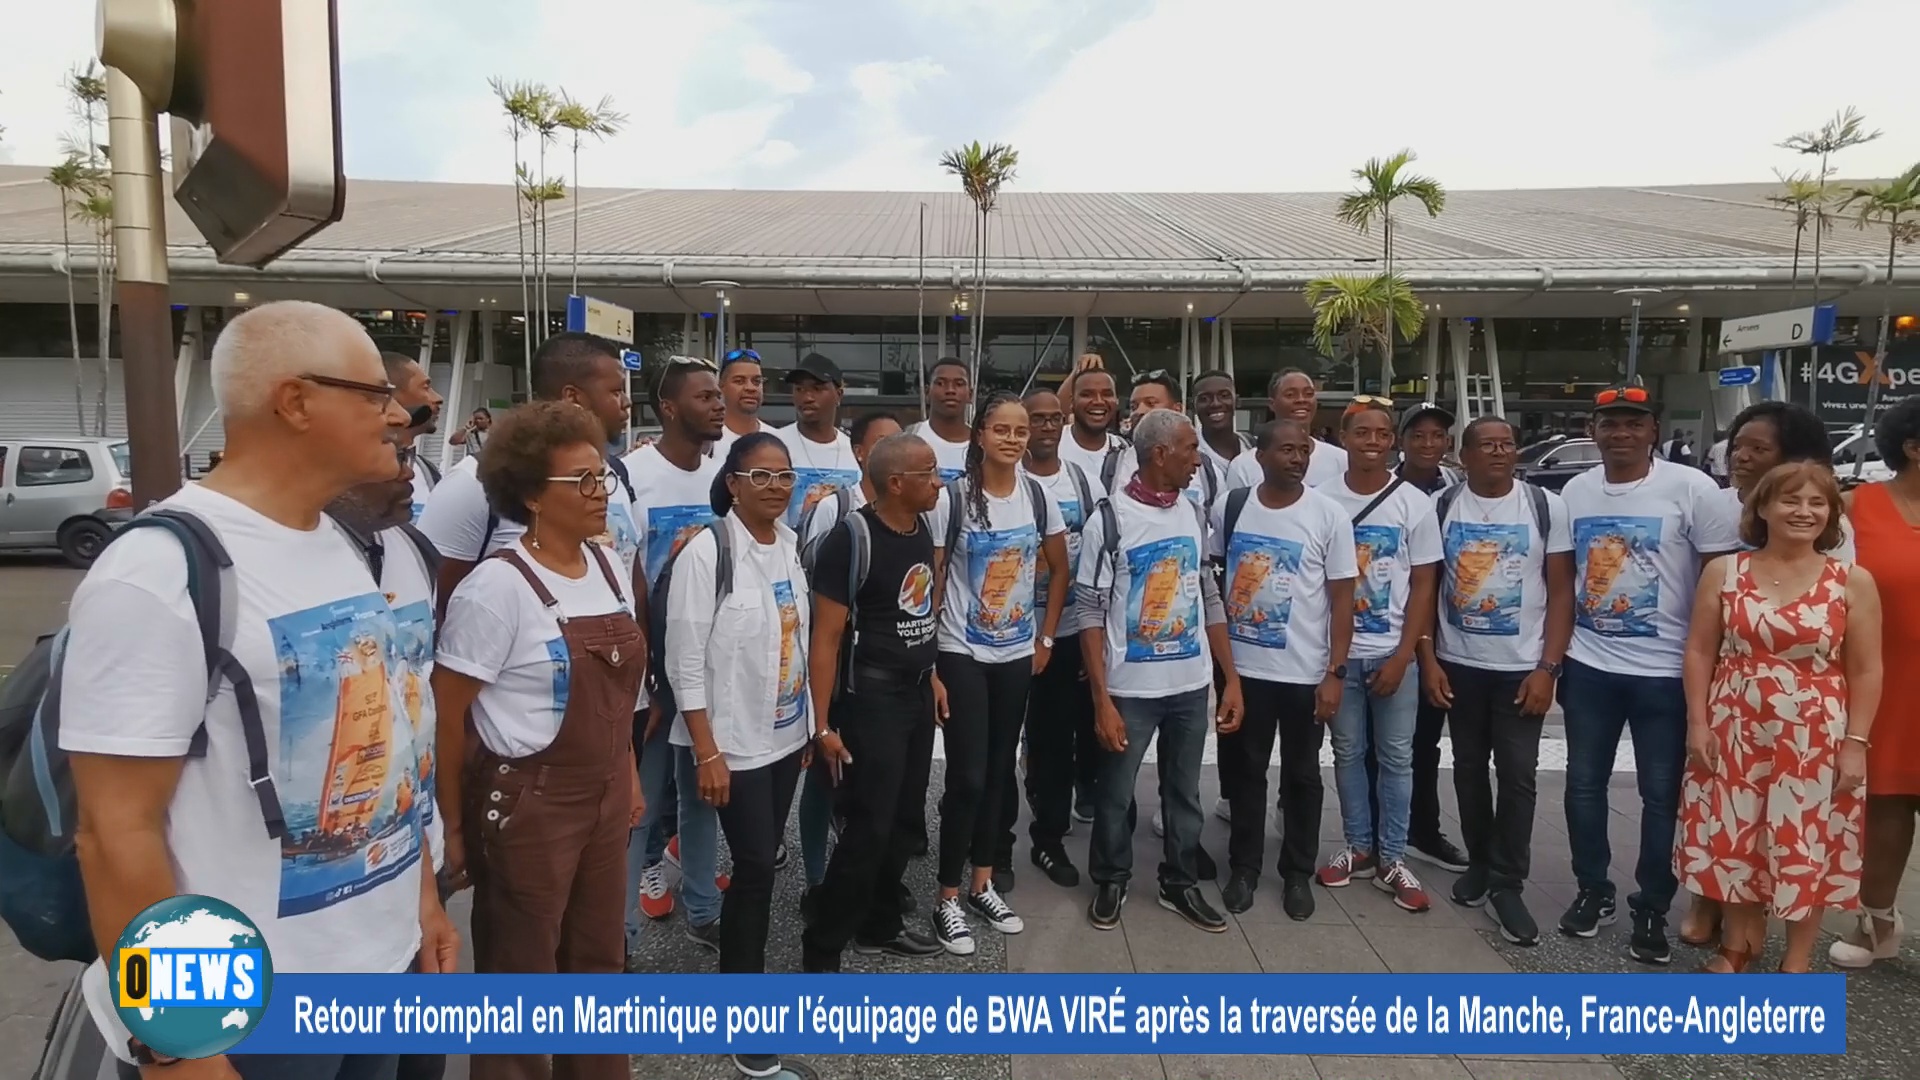 [Vidéo] Martinique Retour triomphal pour l équipage après la traversée Manche Angleterre